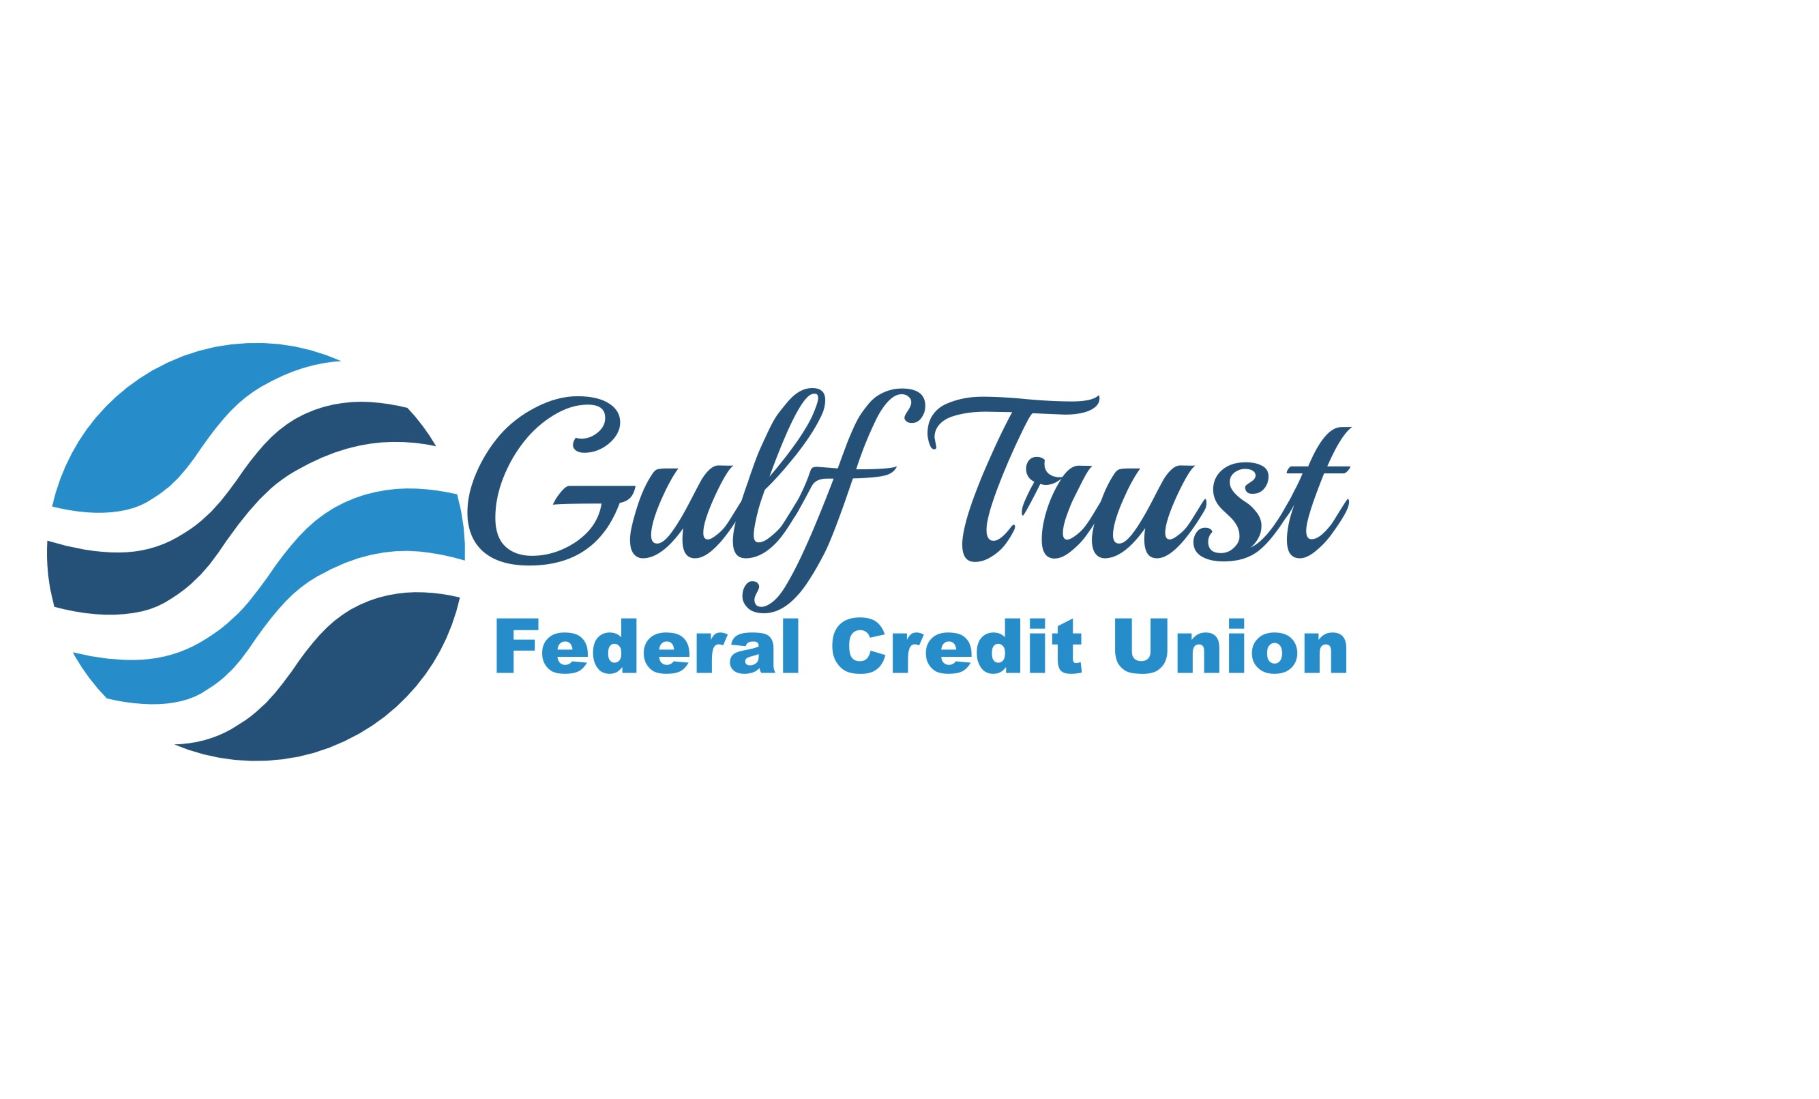 Gulf Trust Federal Credit Union